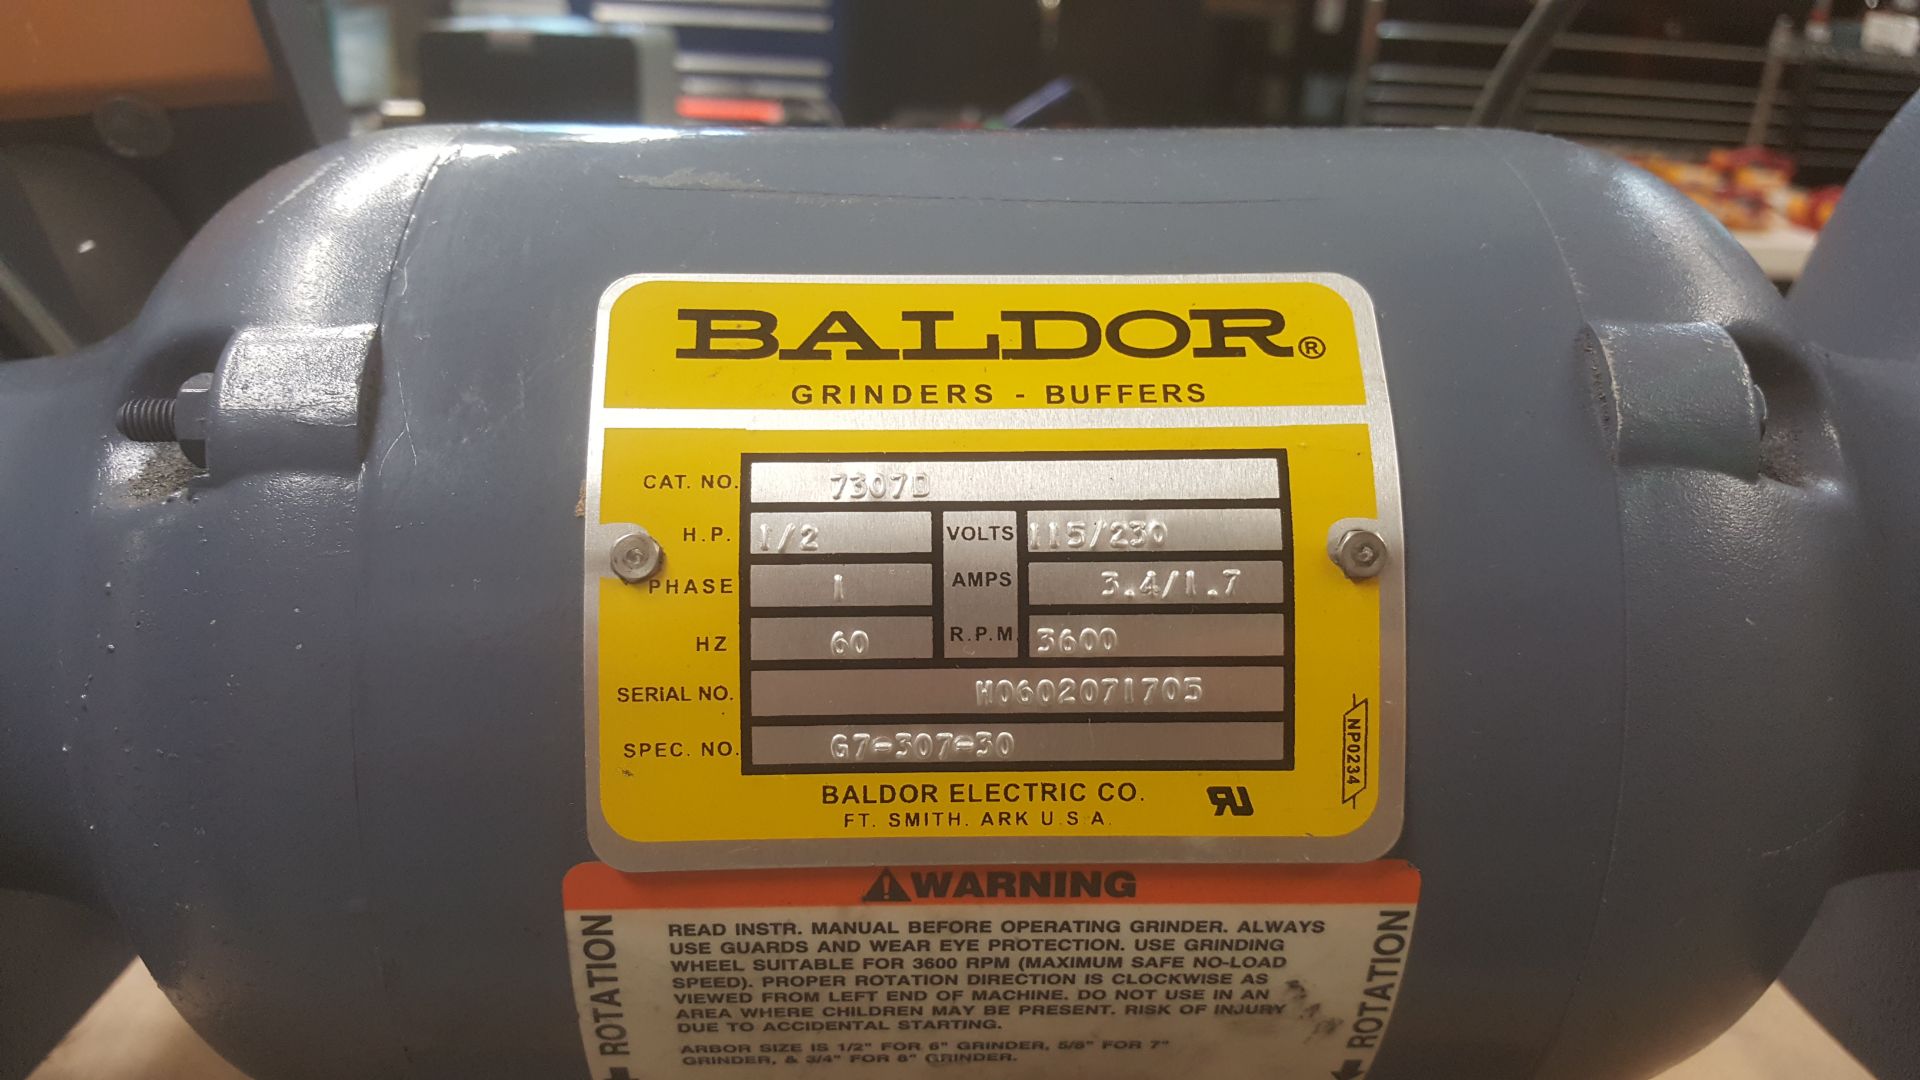 BALDOR grinder mod.7307D with lighted eye shields - Image 2 of 2